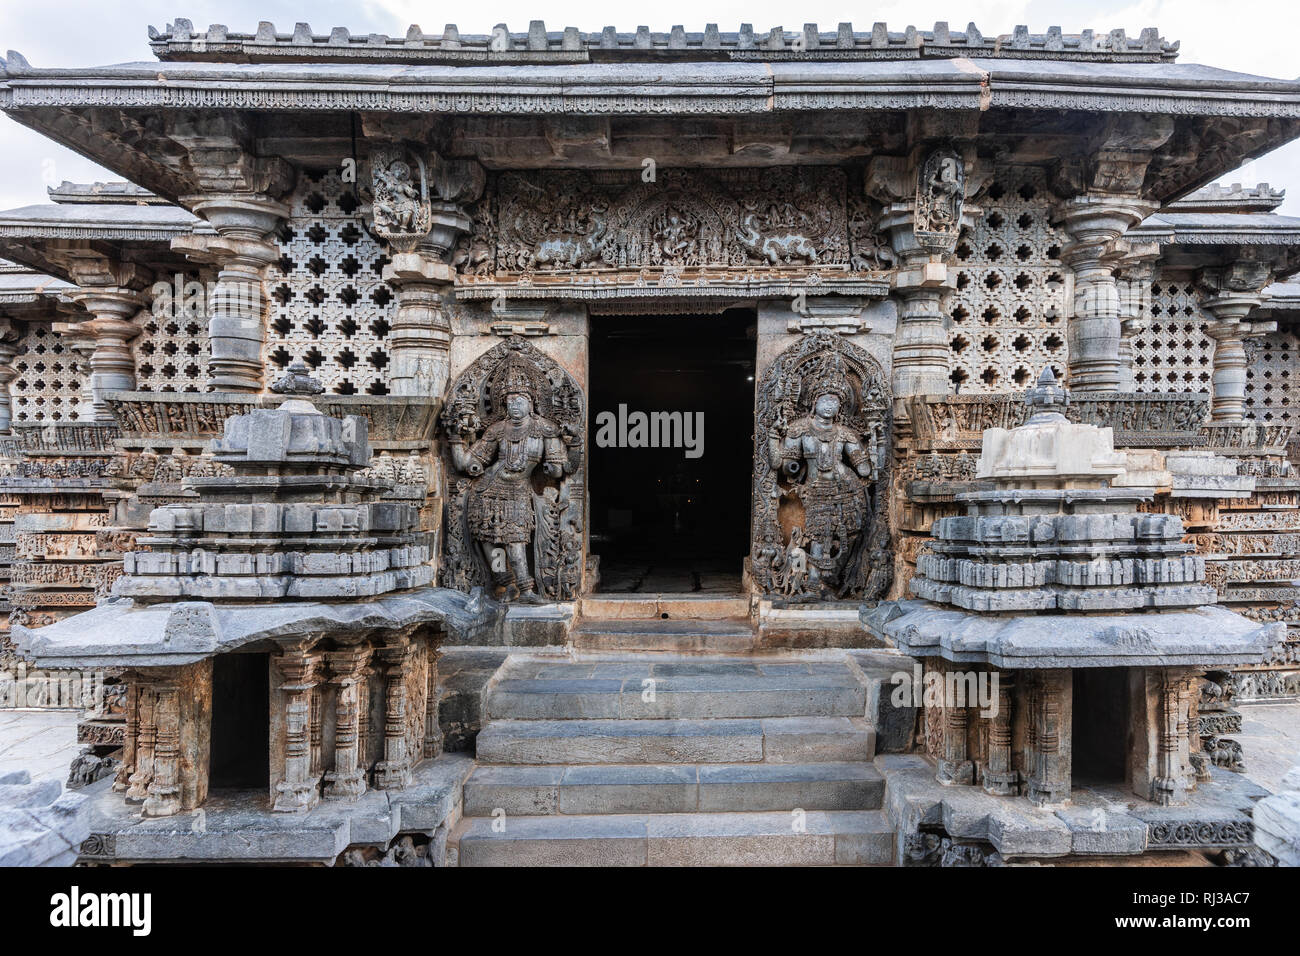 Halebidu, Karnataka, Indien - November 2, 2013: Hoysaleswara Tempel von Shiva. Haupteingang Mandapam mit Statuen von zwei Wächter Dwarapalakas. Othe Stockfoto